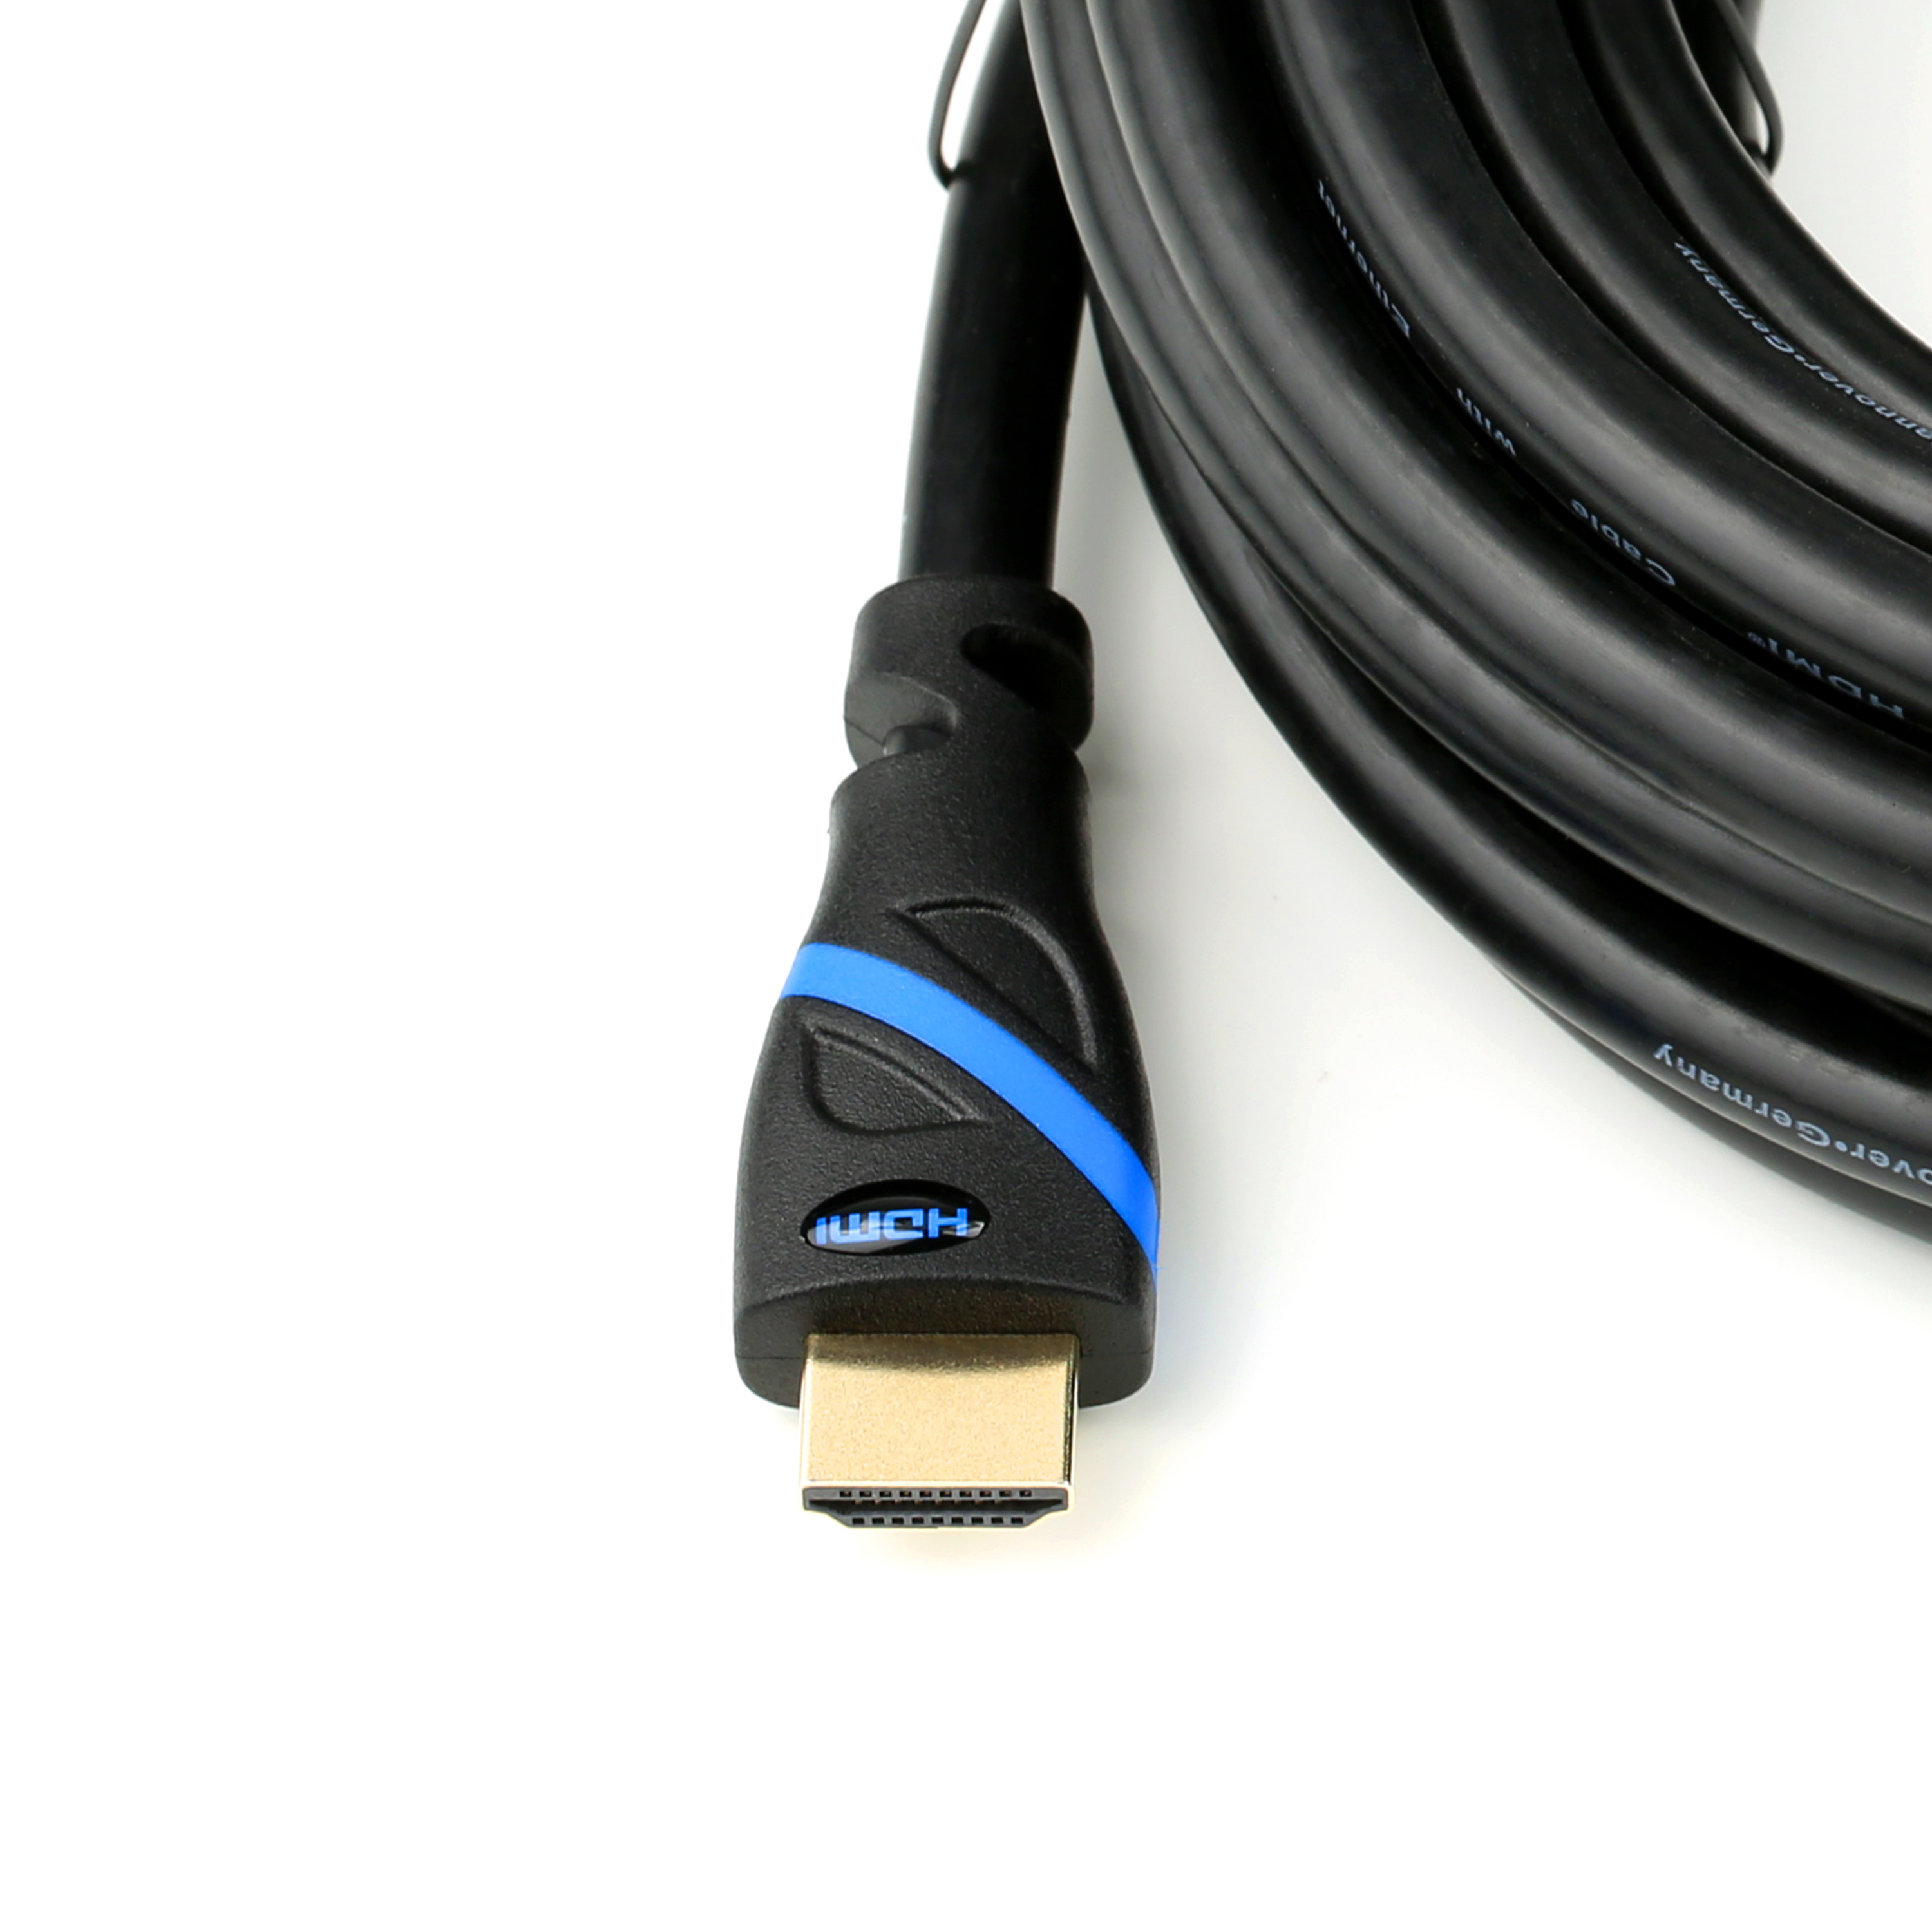 CSL HDMI 2.0 Kabel, 0,5m Kabel, schwarz/blau HDMI